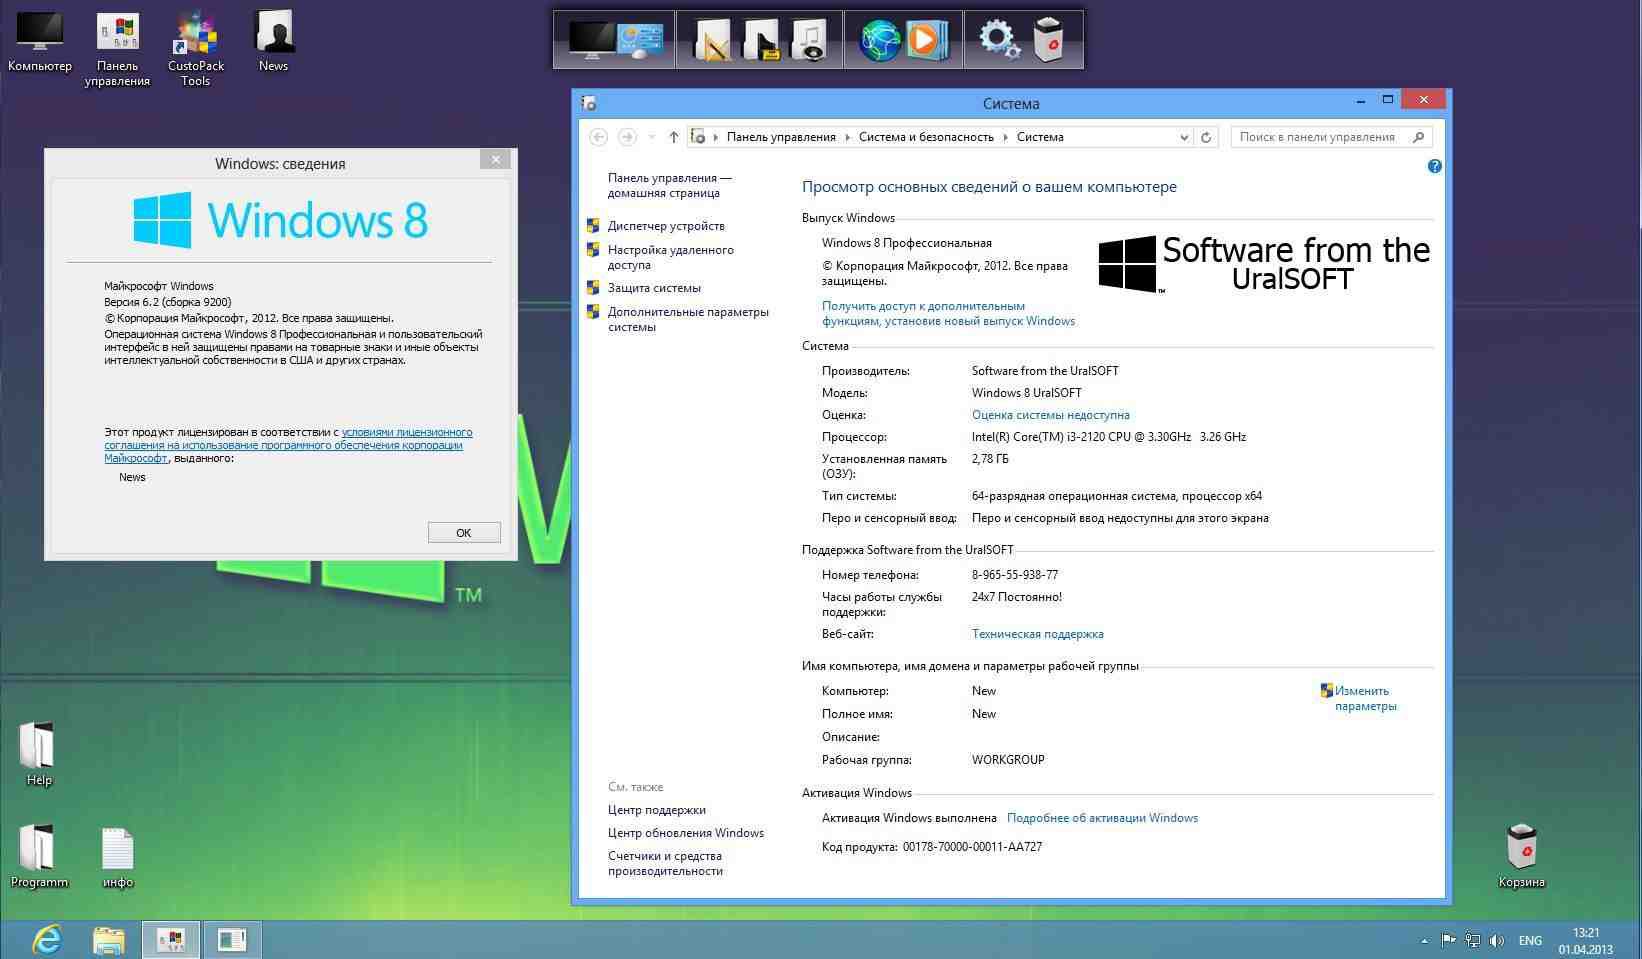 Windows 8.1 64 bit драйвера. Windows 8.1 URALSOFT. Windows 8.1 URALSOFT темы Assassins. Windows 8.1 Lite x64. Software from the URALSOFT.